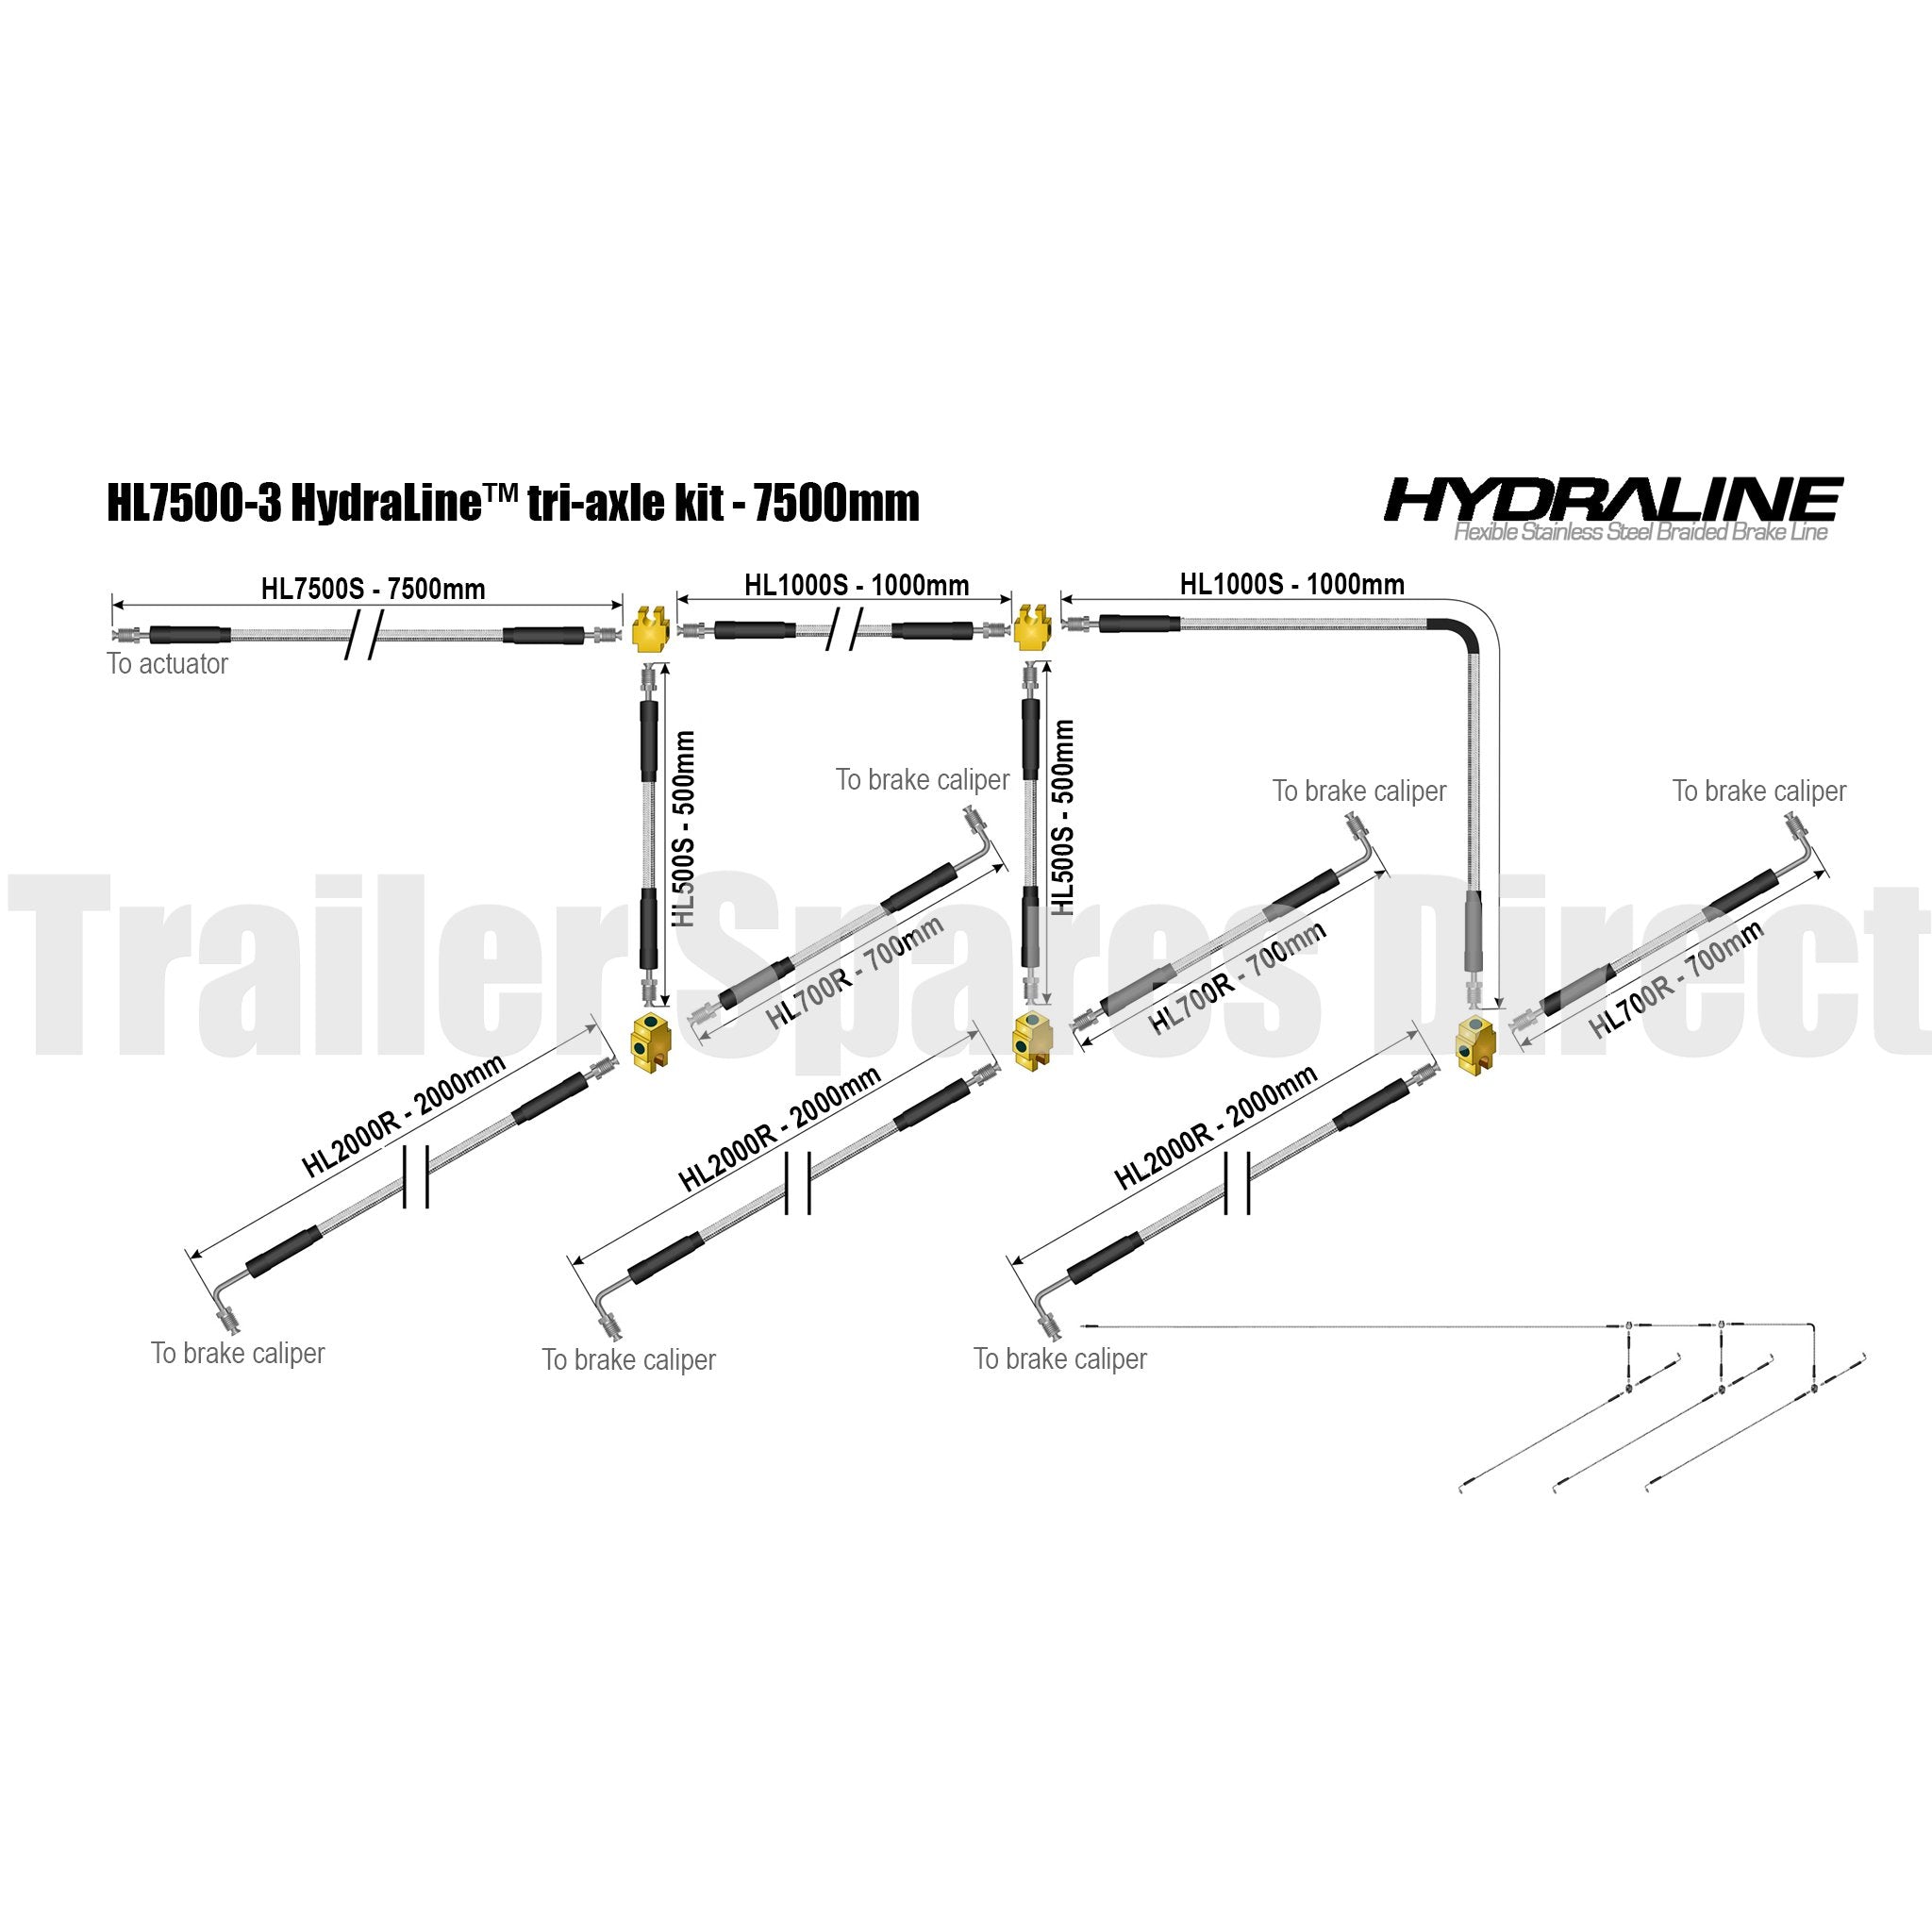 Hydraline kit 7500mm tri-axle diagram